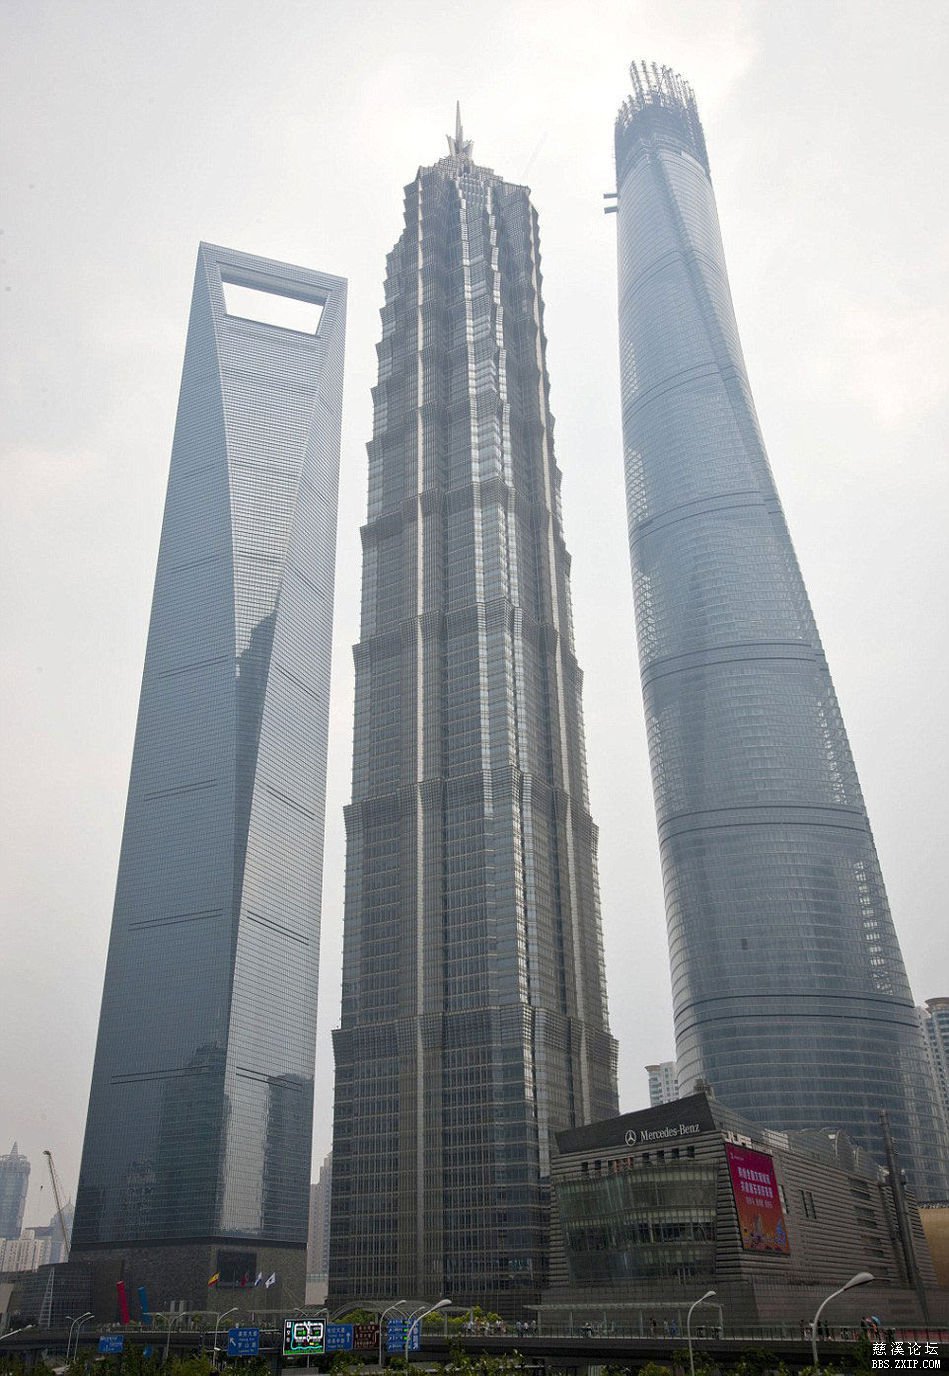 姊妹塔:从左到右分别为上海环球金融中心,金贸大厦以及上海中心大厦.